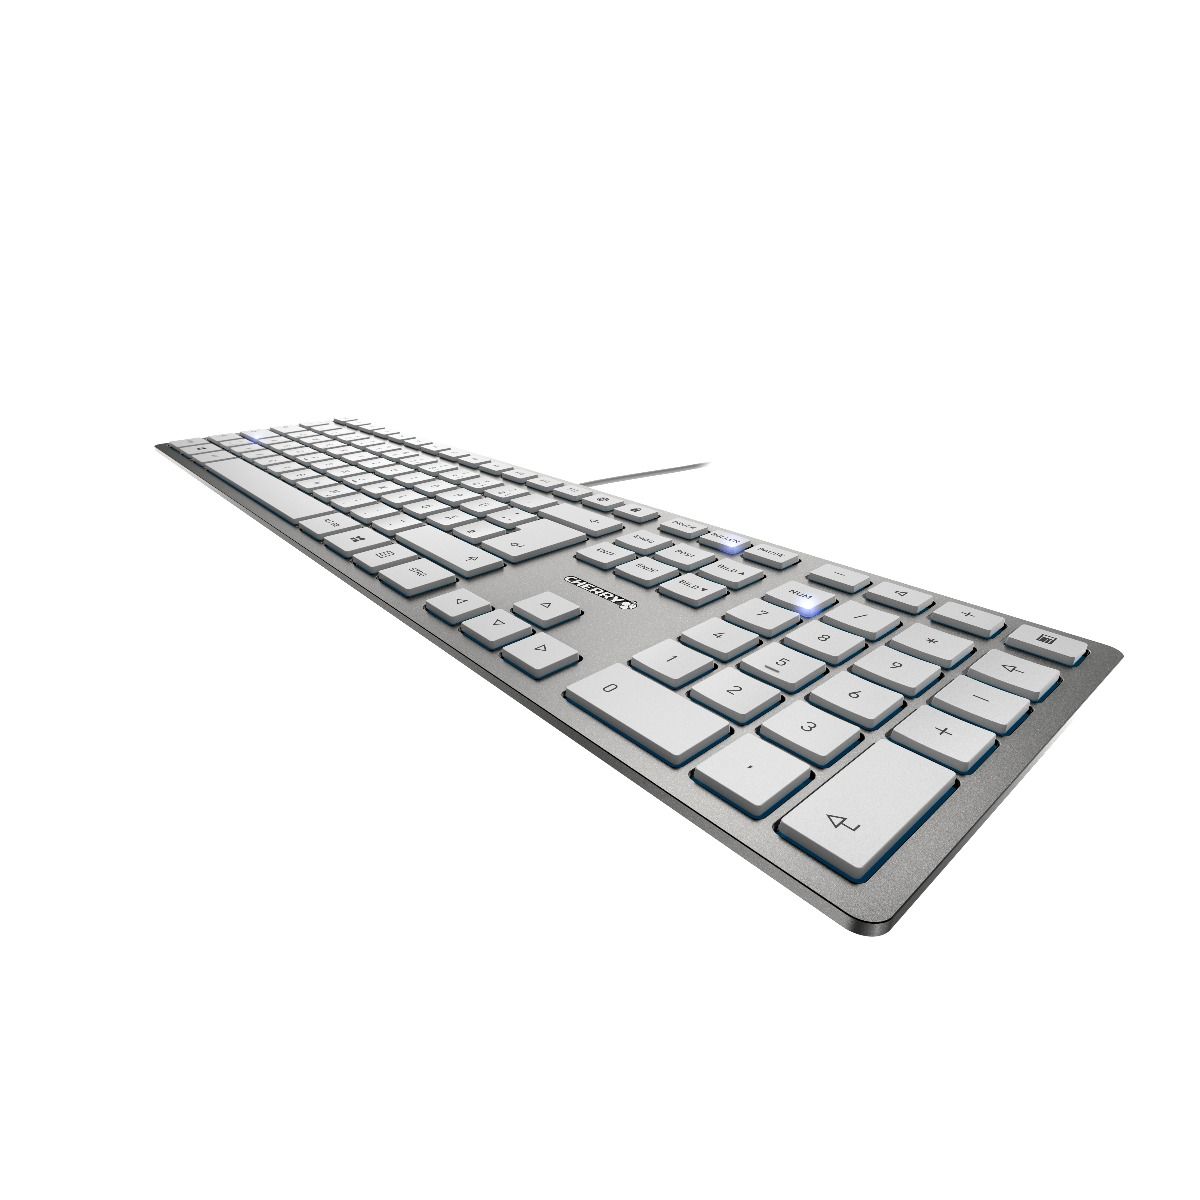 Cherry JK-1600DE-1 KC 6000 Slim Tastatur deutsch USB, silber/weiss